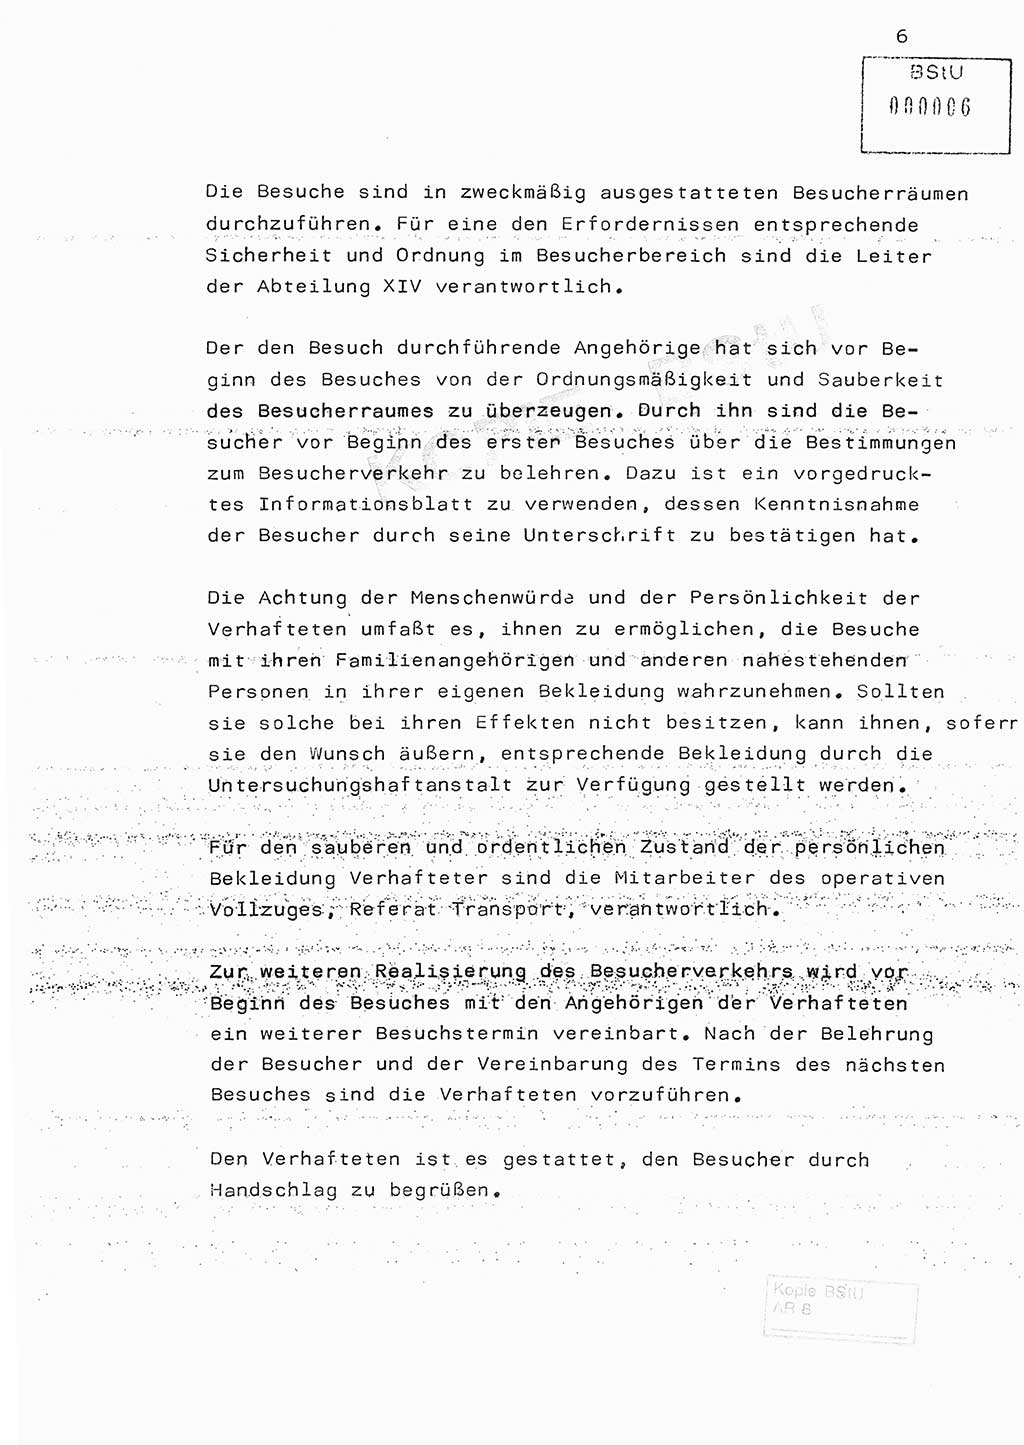 Fachschulabschlußarbeit Hauptmann Edwin Buhse (Abt. ⅩⅣ), Ministerium für Staatssicherheit (MfS) [Deutsche Demokratische Republik (DDR)], Abteilung ⅩⅣ, o.D., o.O, o.J., ca. 1986 wg. Bez. DA 2/86, Seite 6 (FS-Abschl.-Arb. MfS DDR Abt. ⅩⅣ 1986, S. 6)